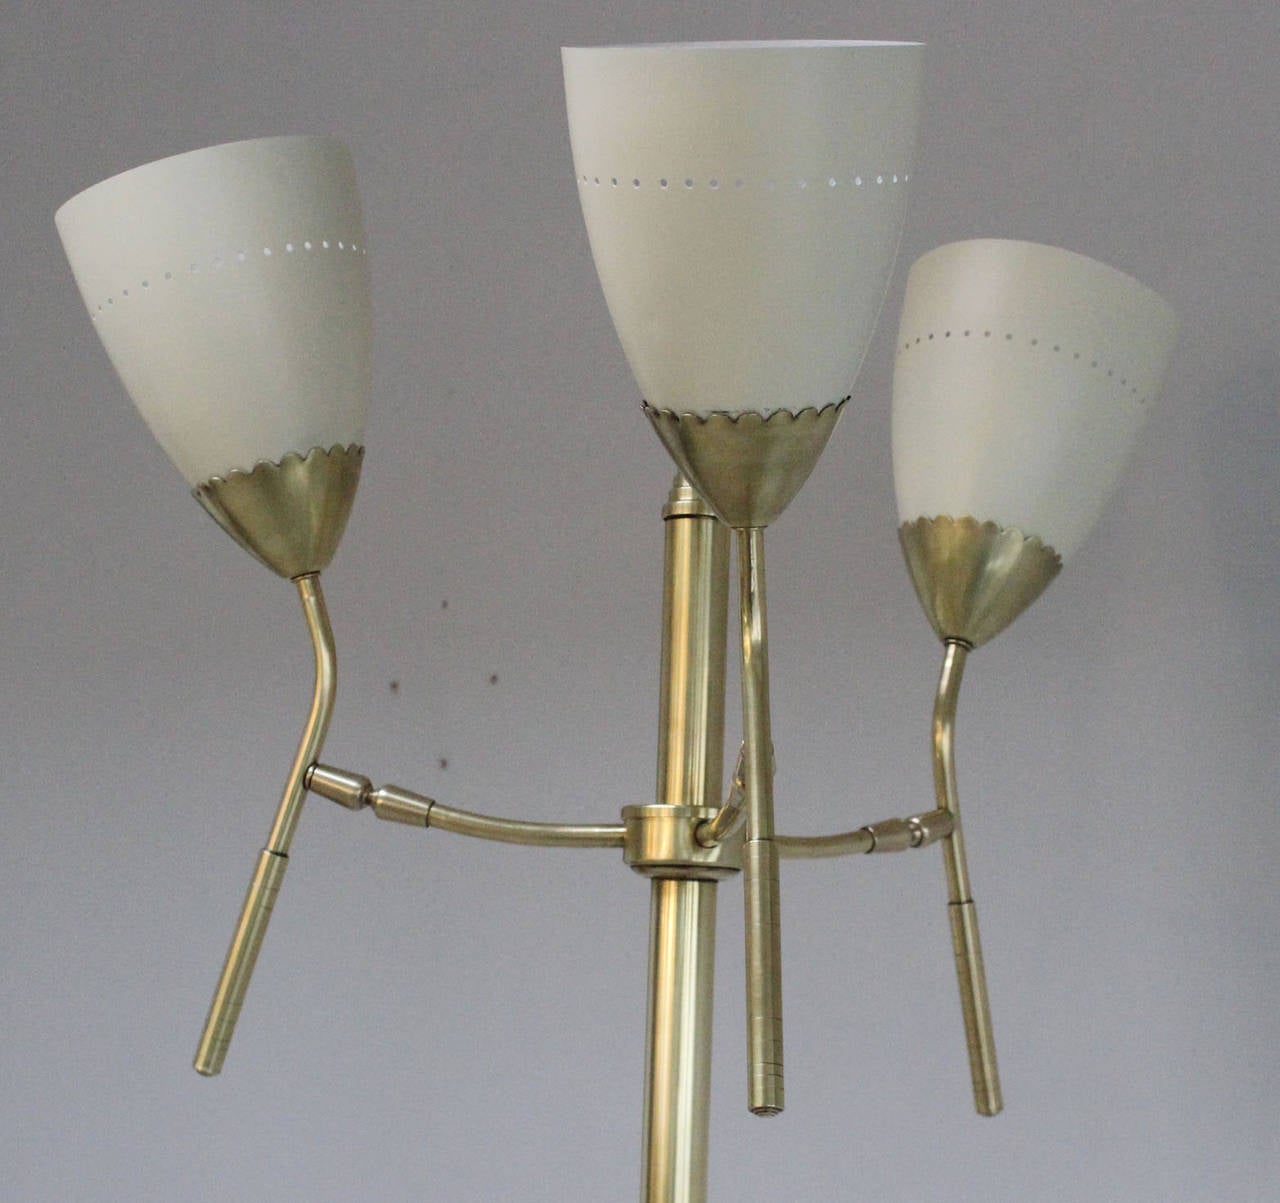 Mid-20th Century Italian Floor Lamp